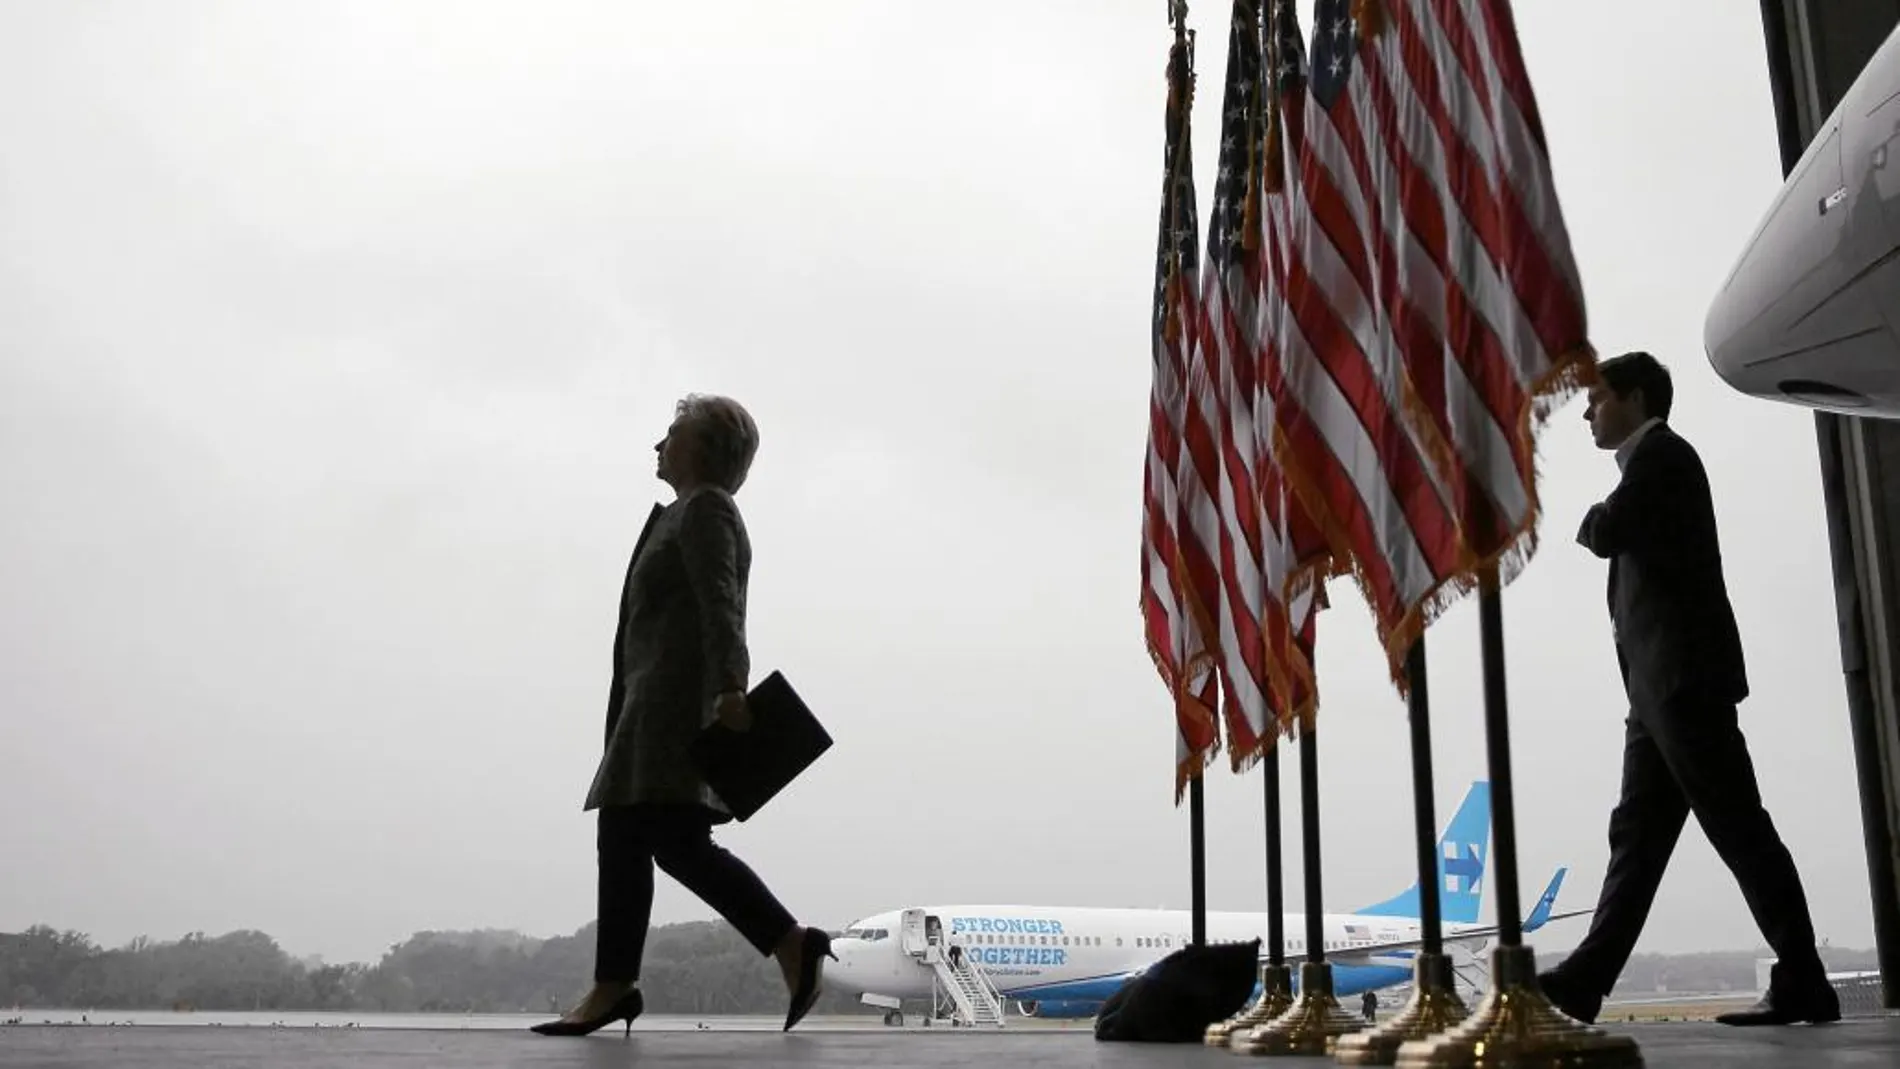 La candidata demócrata, Hillary Clinton, antes de embarcar en su avión de campaña, en Nueva York